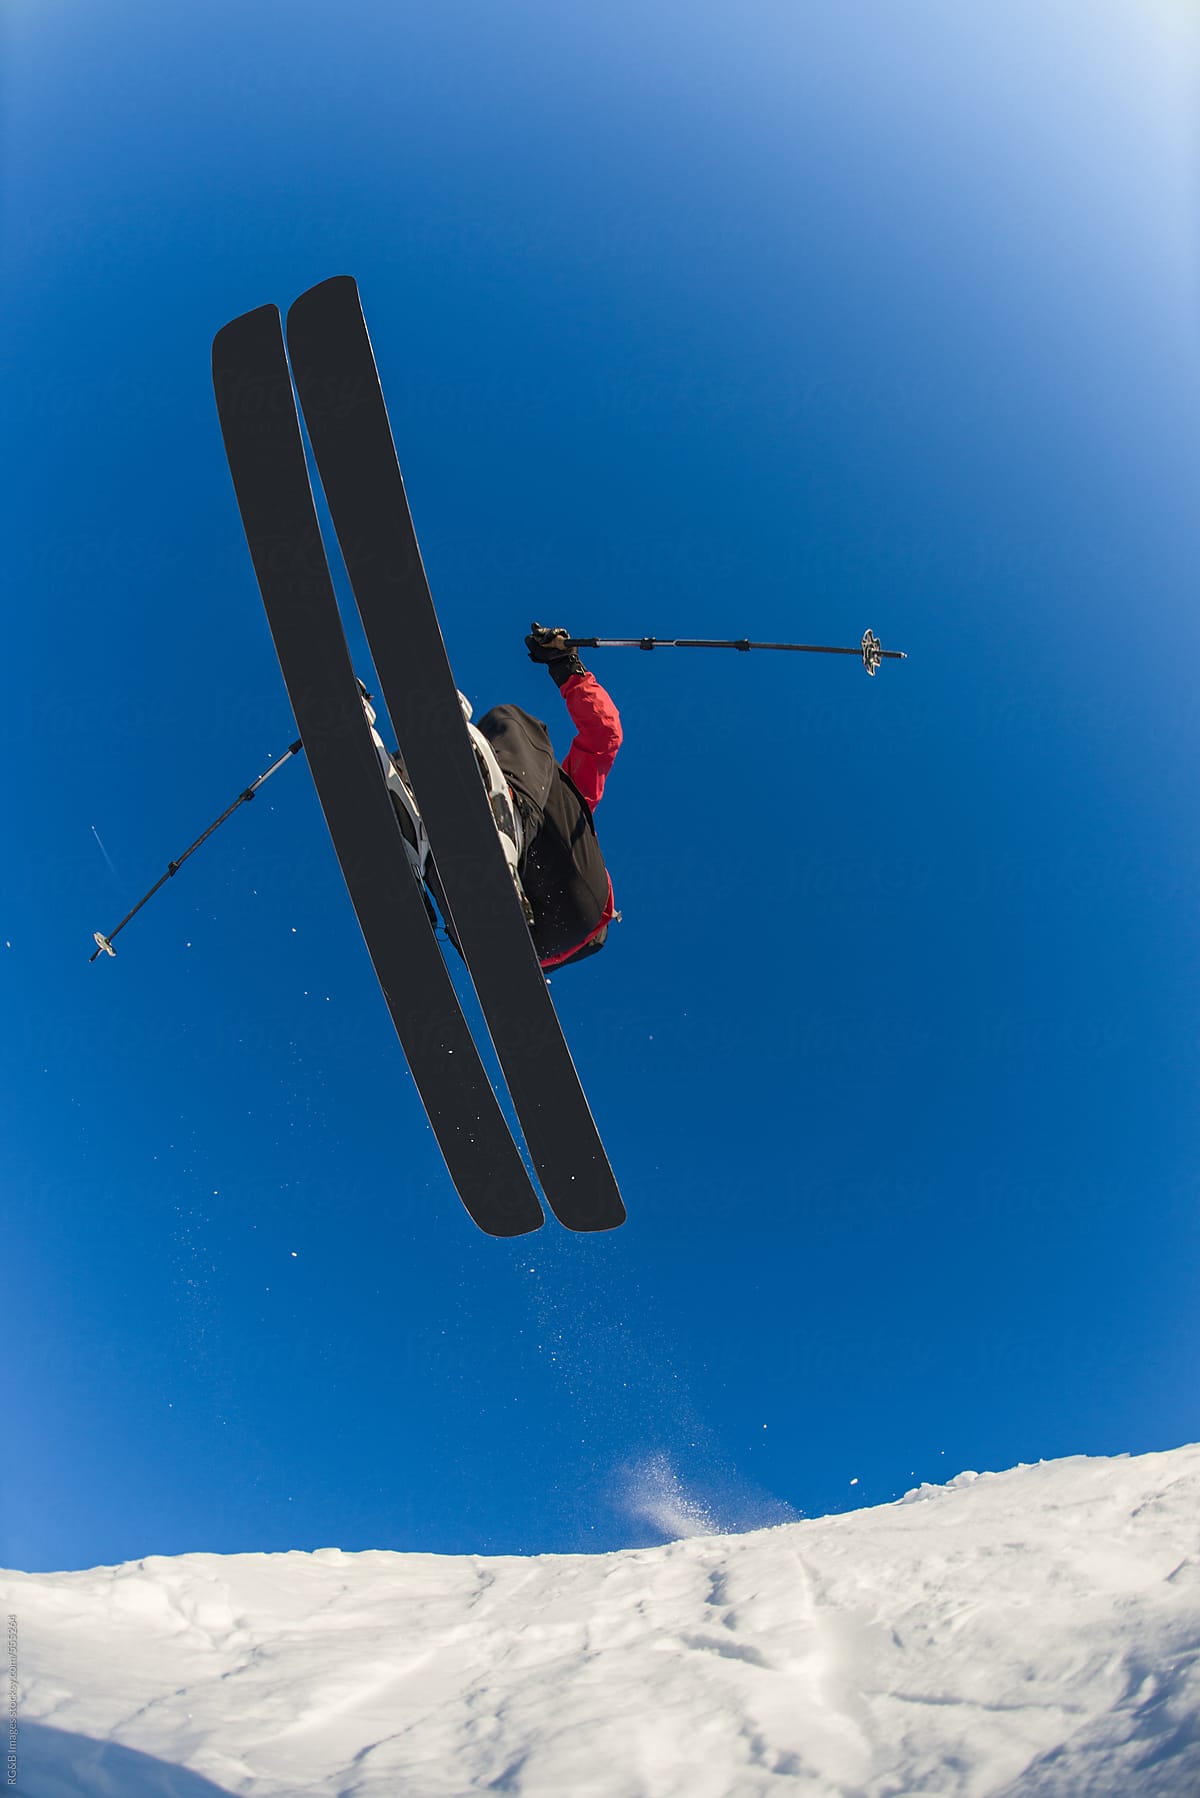 Freerider flying on skis